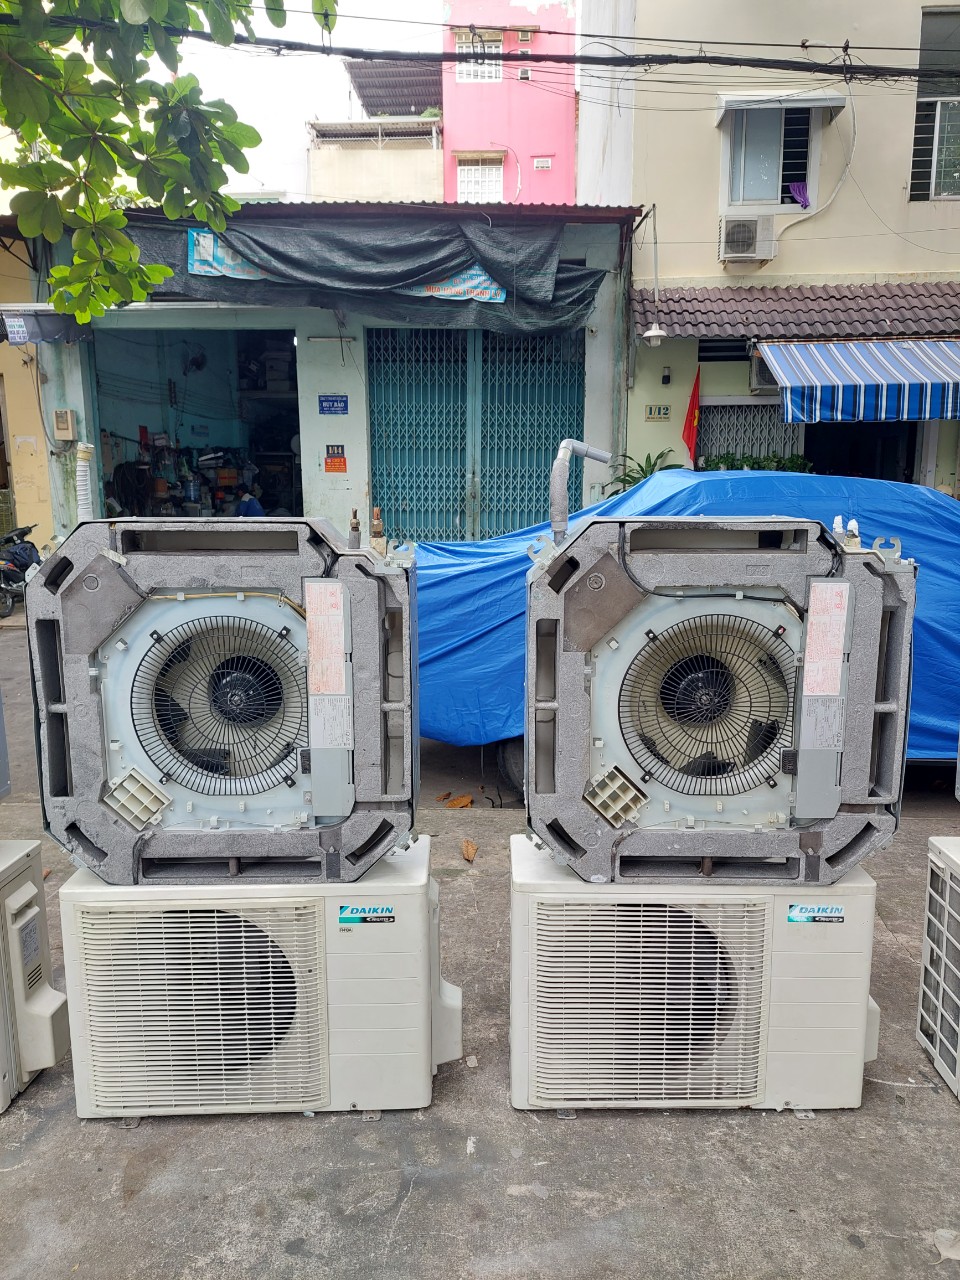 Đại lý máy lạnh cũ ở Bình Định 0907 243 680 Mr Bảo